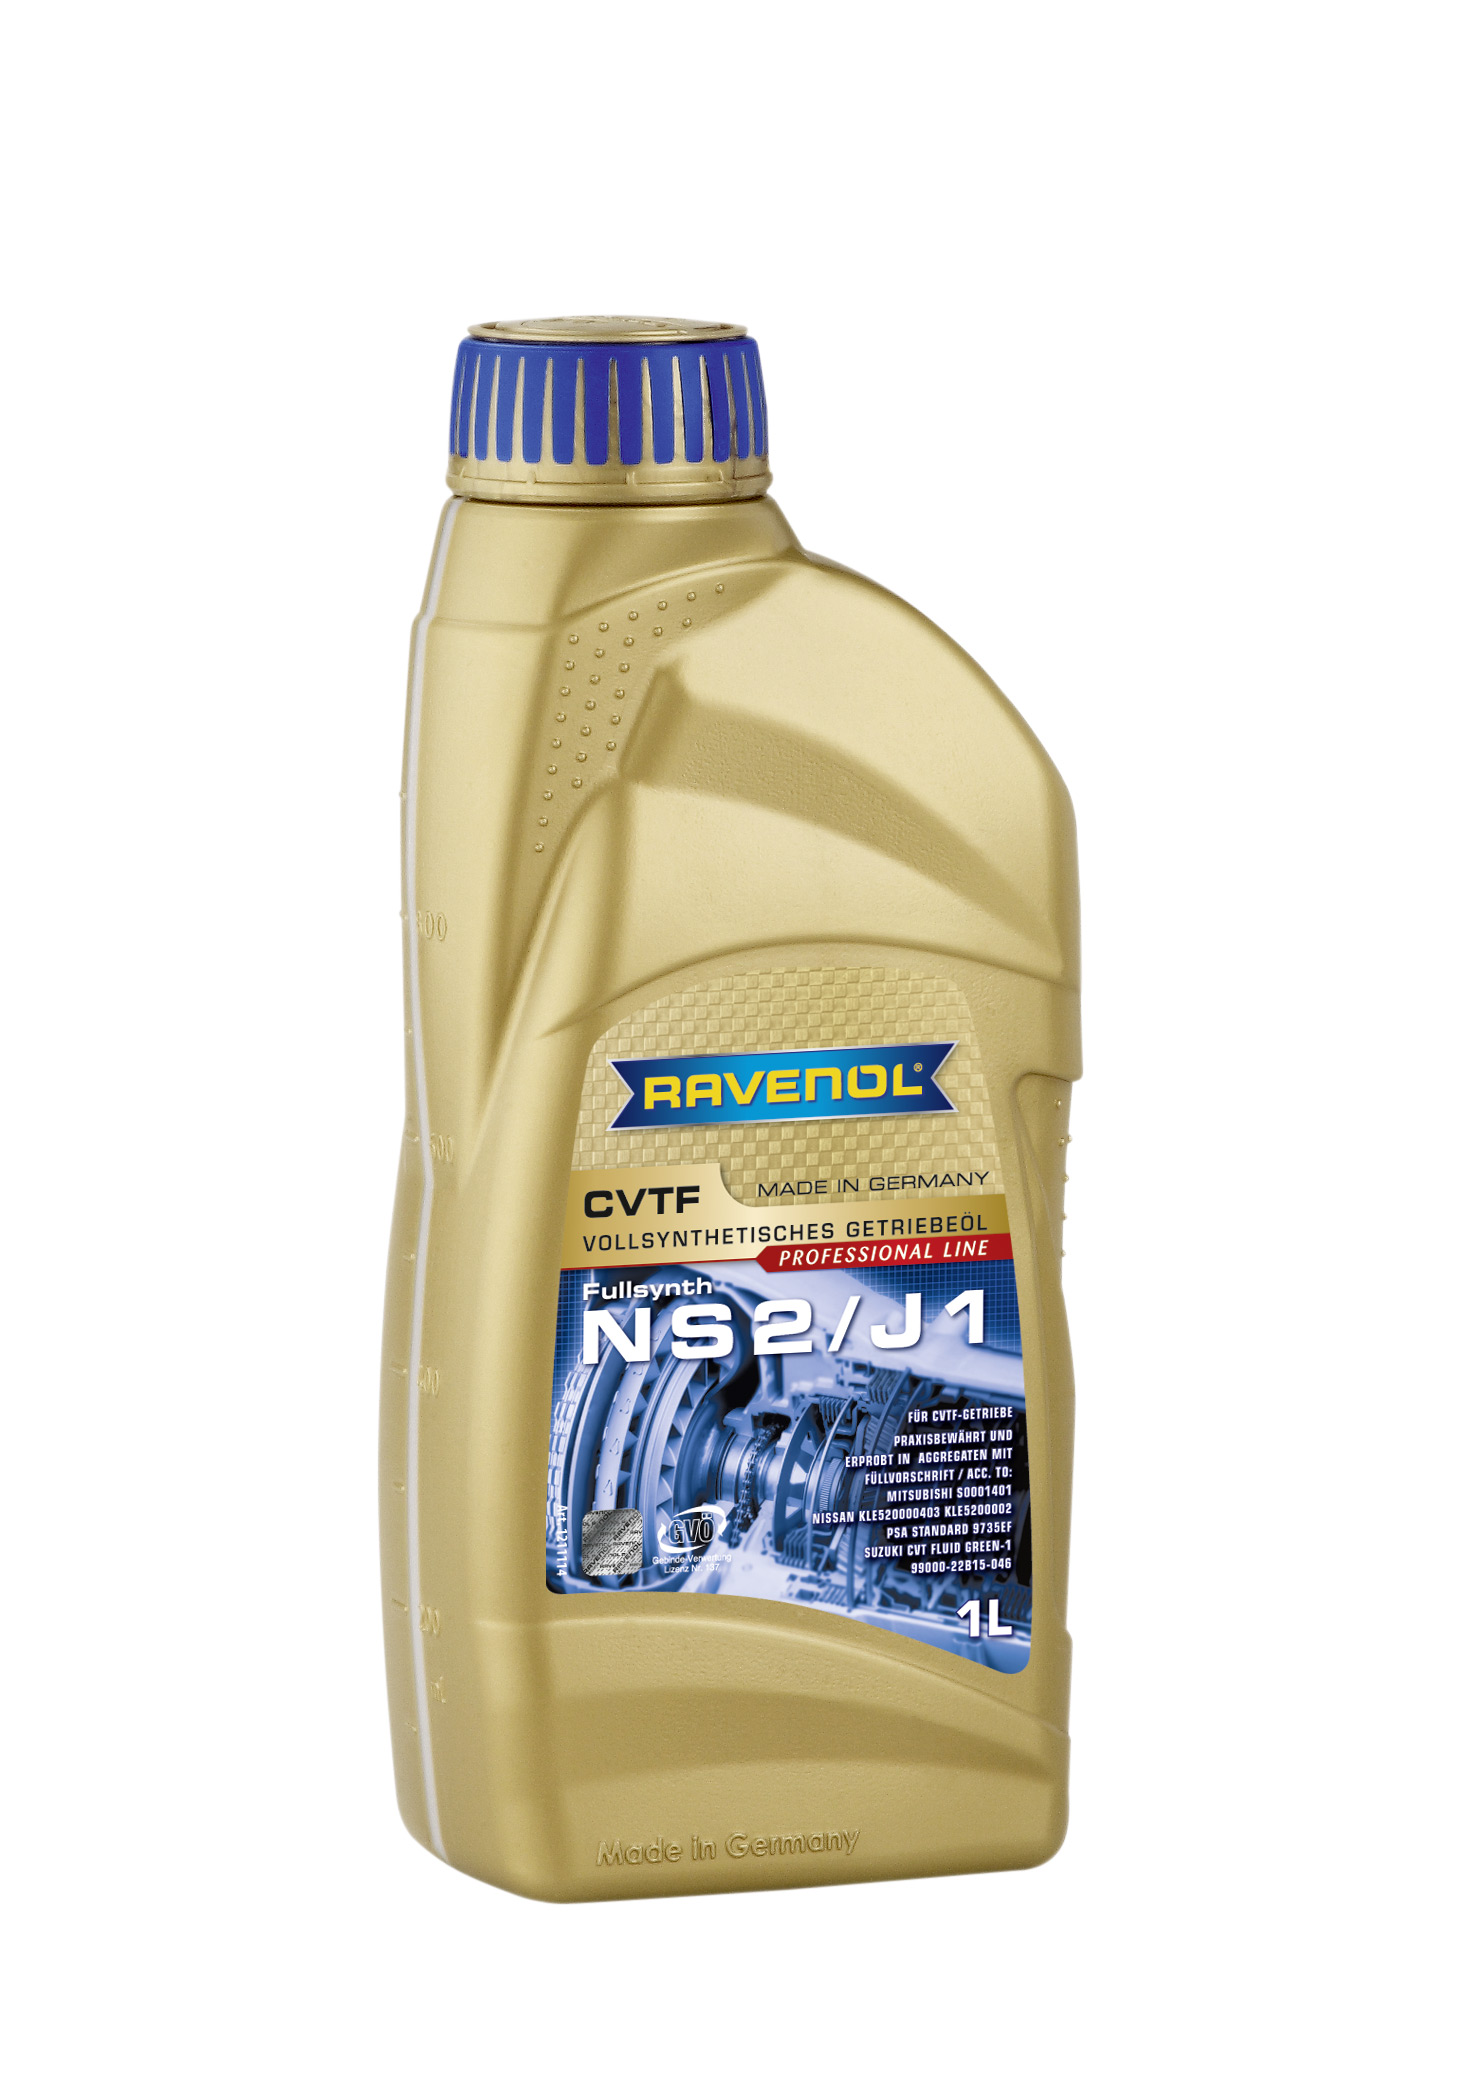 Трансмиссионное масло RAVENOL CVTF NS2/J1 Fluid (1л) new 4014835719316